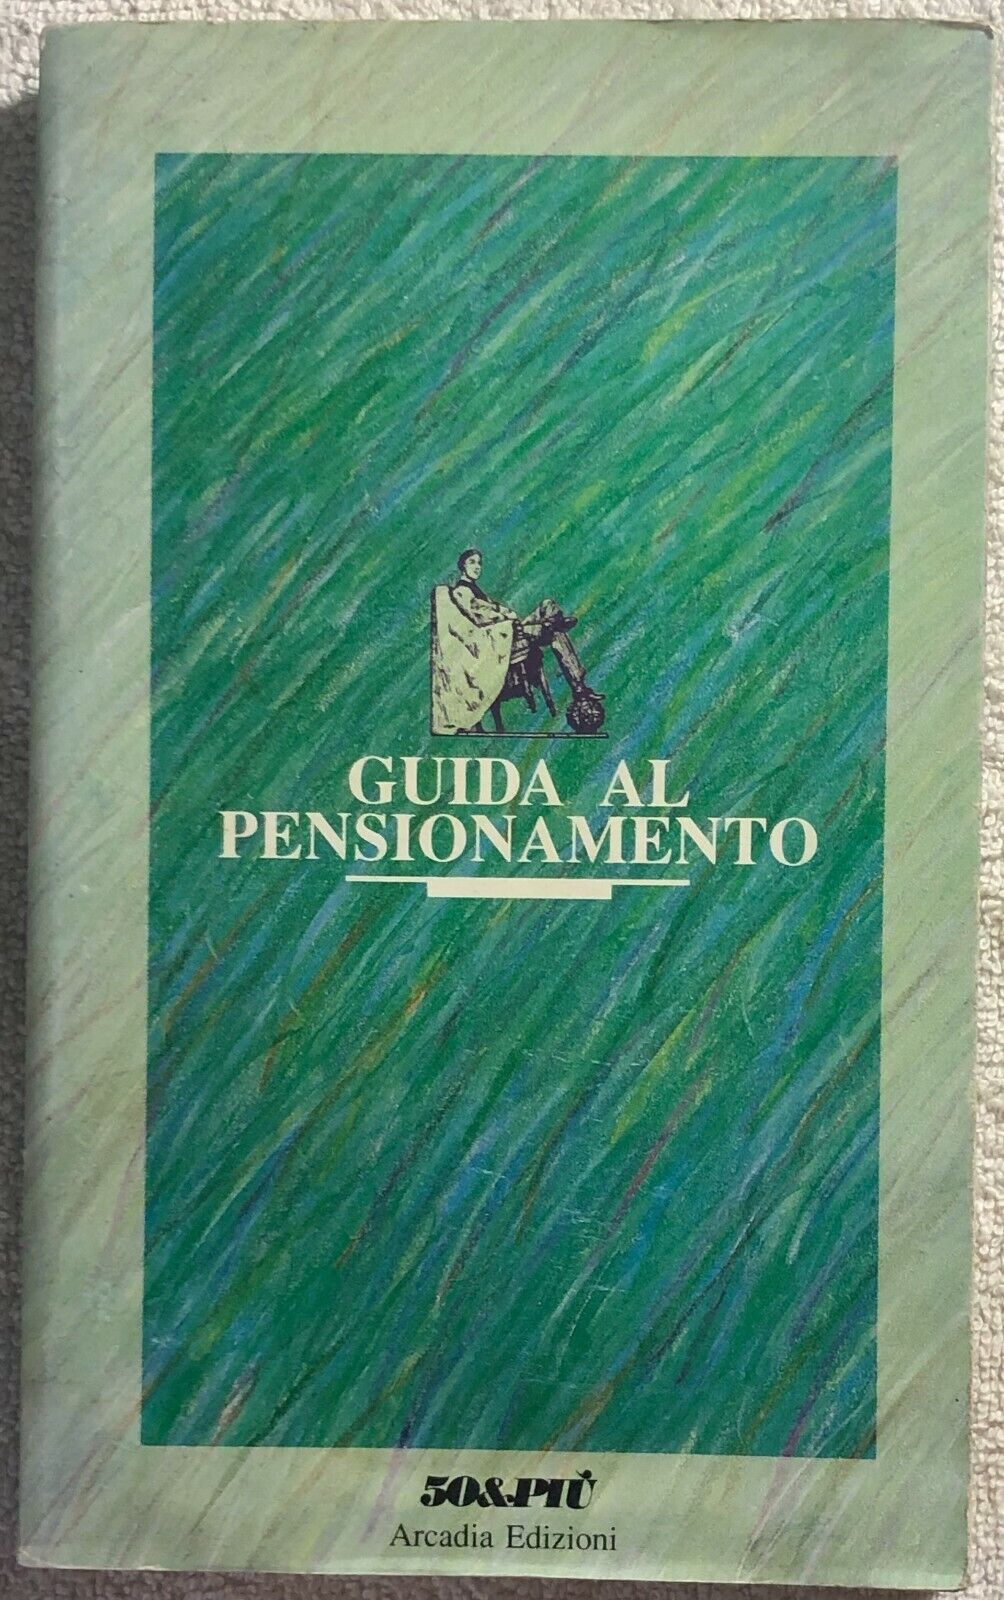 Guida al pensionamento di Aa.vv.,  1989,  Arcadia Edizioni